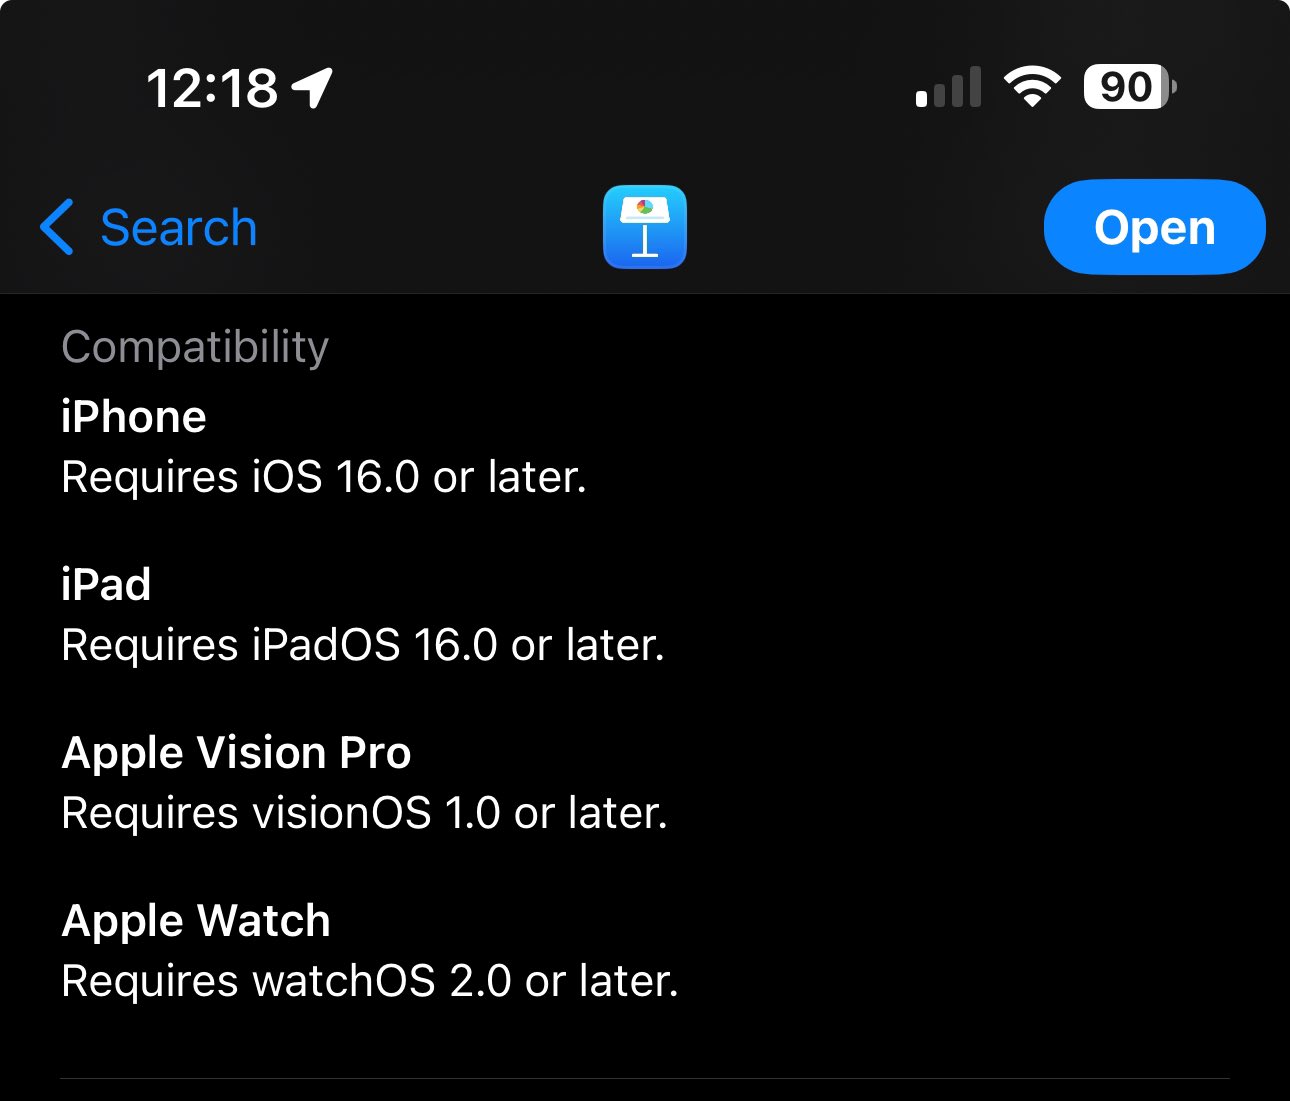 Vision Pro aparece como uno de los dispositivos compatibles, con visionOS empezando en la versión 1.0